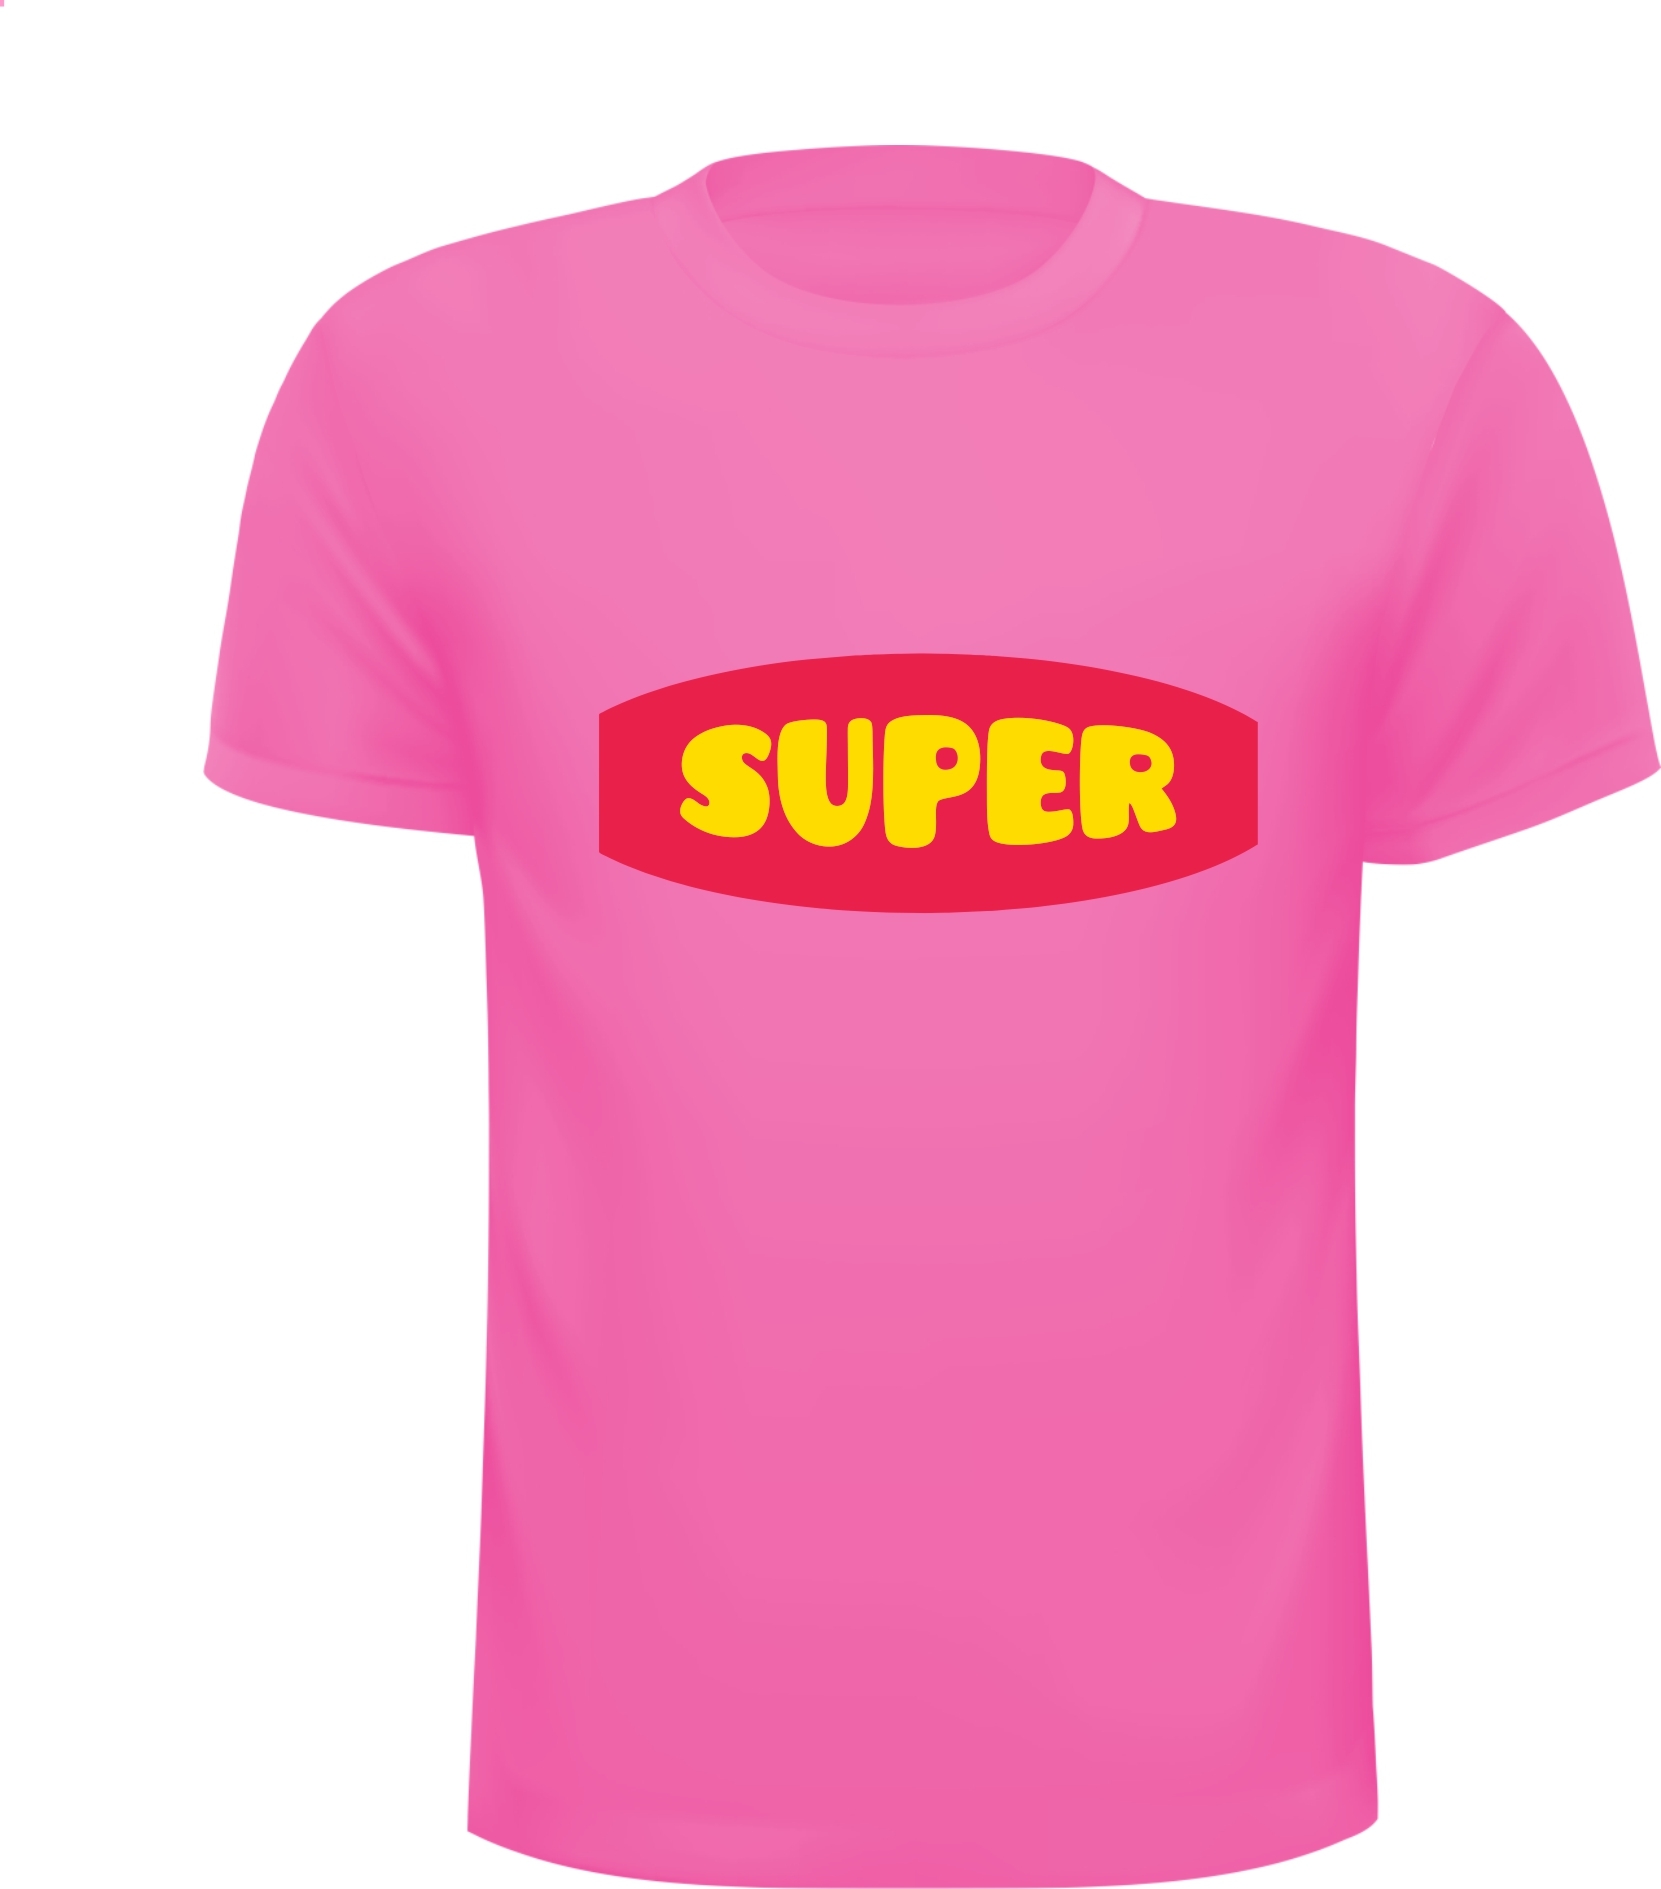 Roze shirtje met een super tekst